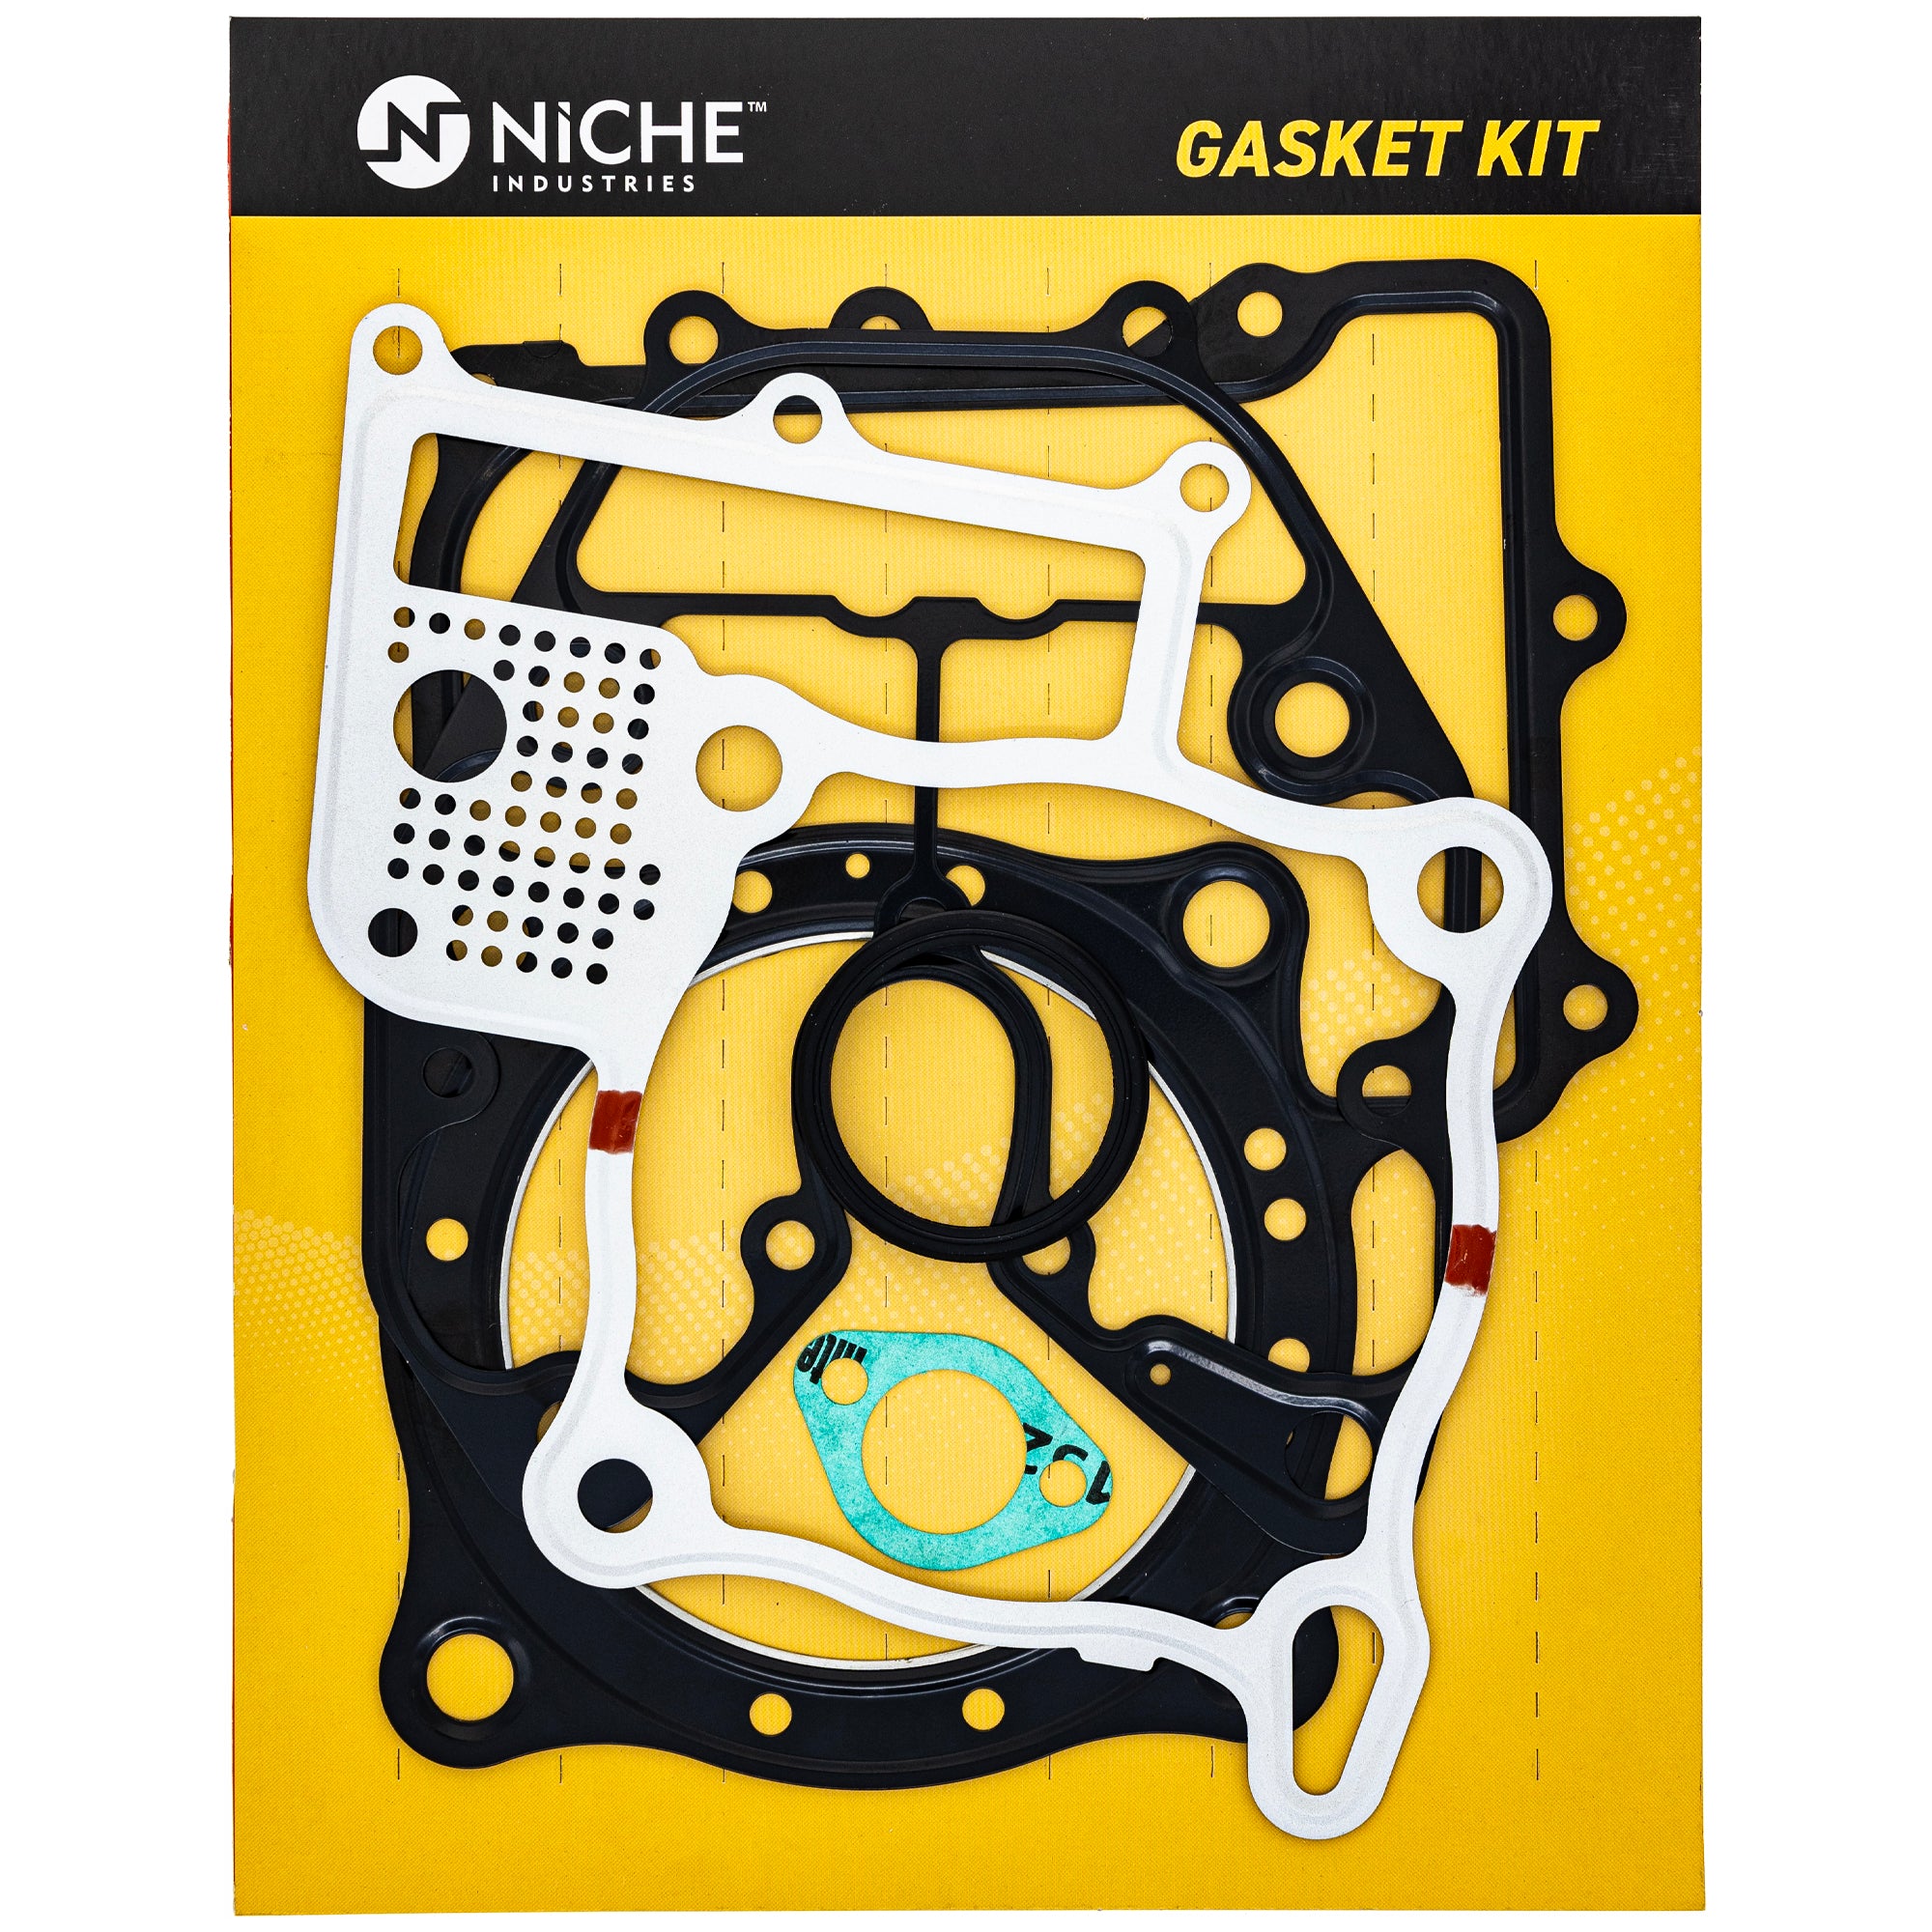 NICHE 519-KGS2279K Gasket Kit for VTX1800T VTX1800S VTX1800R VTX1800N